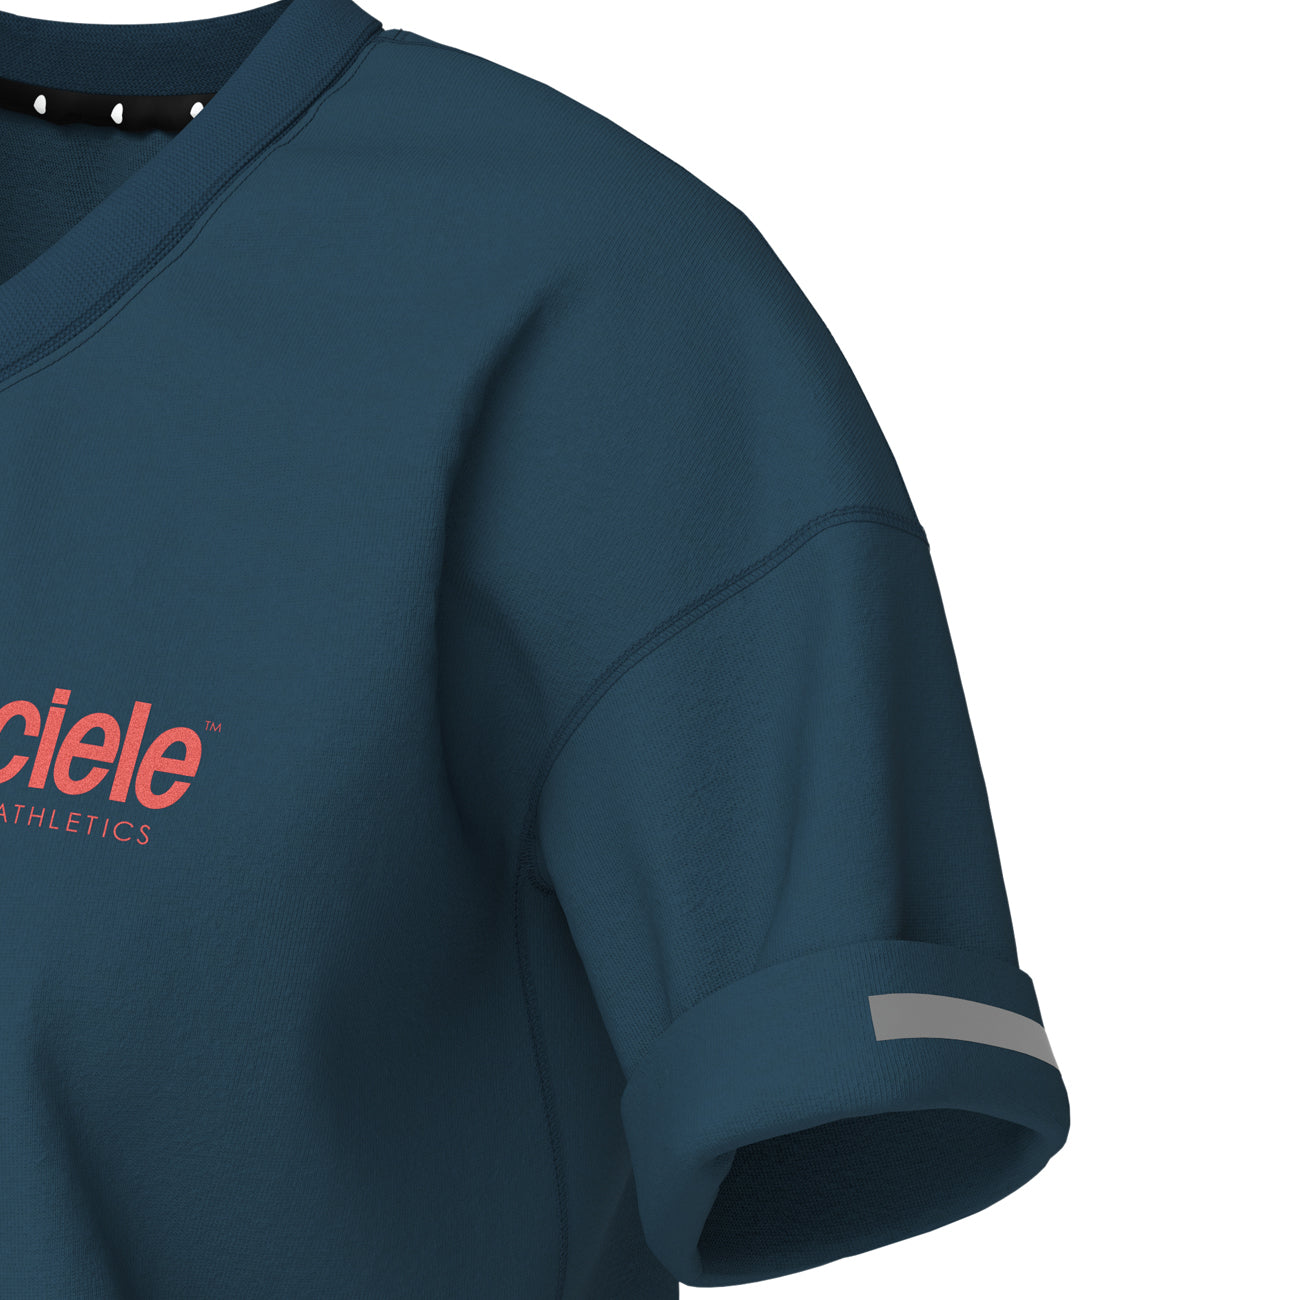 Ciele Athletics WNSB T-Shirt Milestone Damen Galaxia